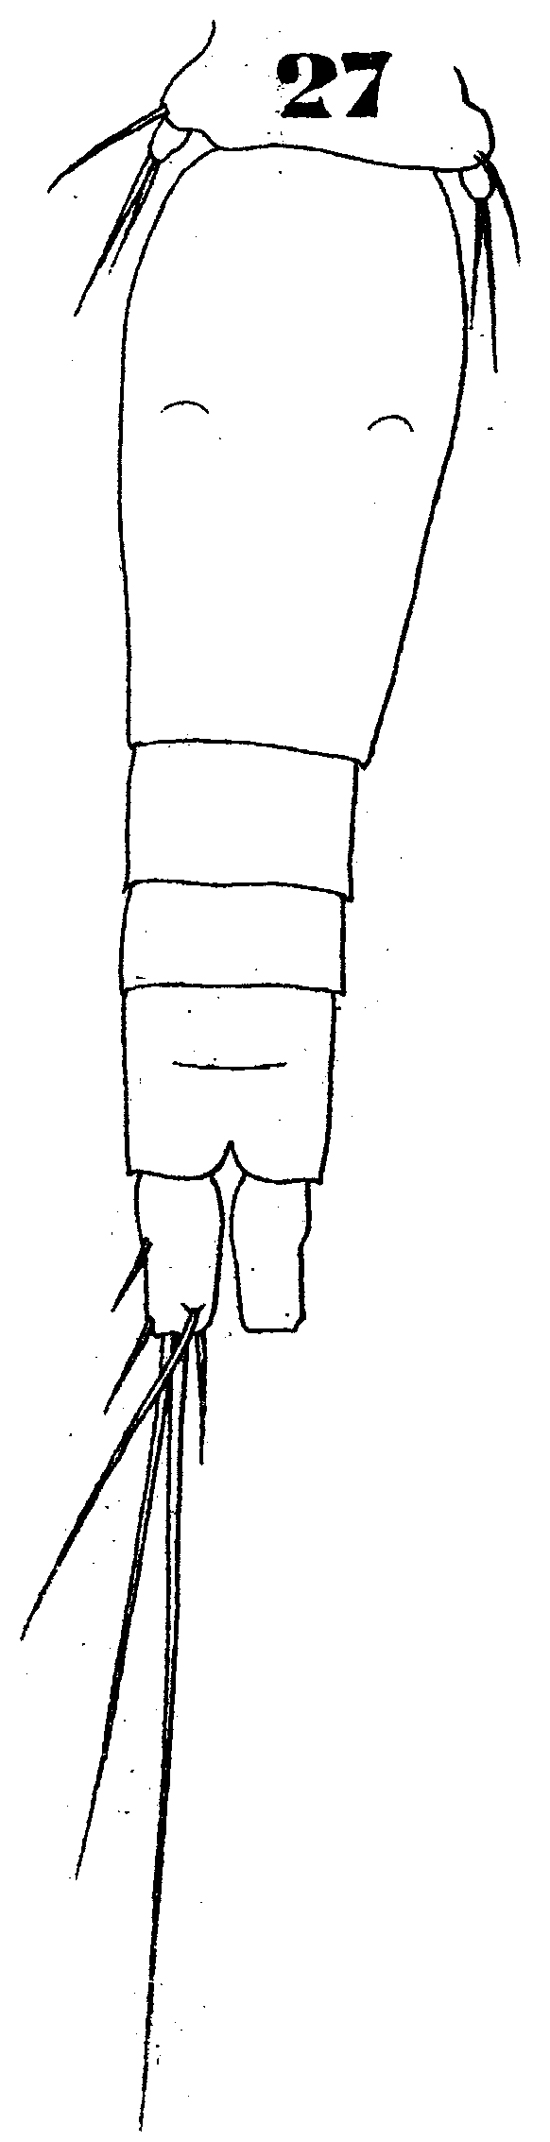 Espèce Oncaea tenuimana - Planche 2 de figures morphologiques